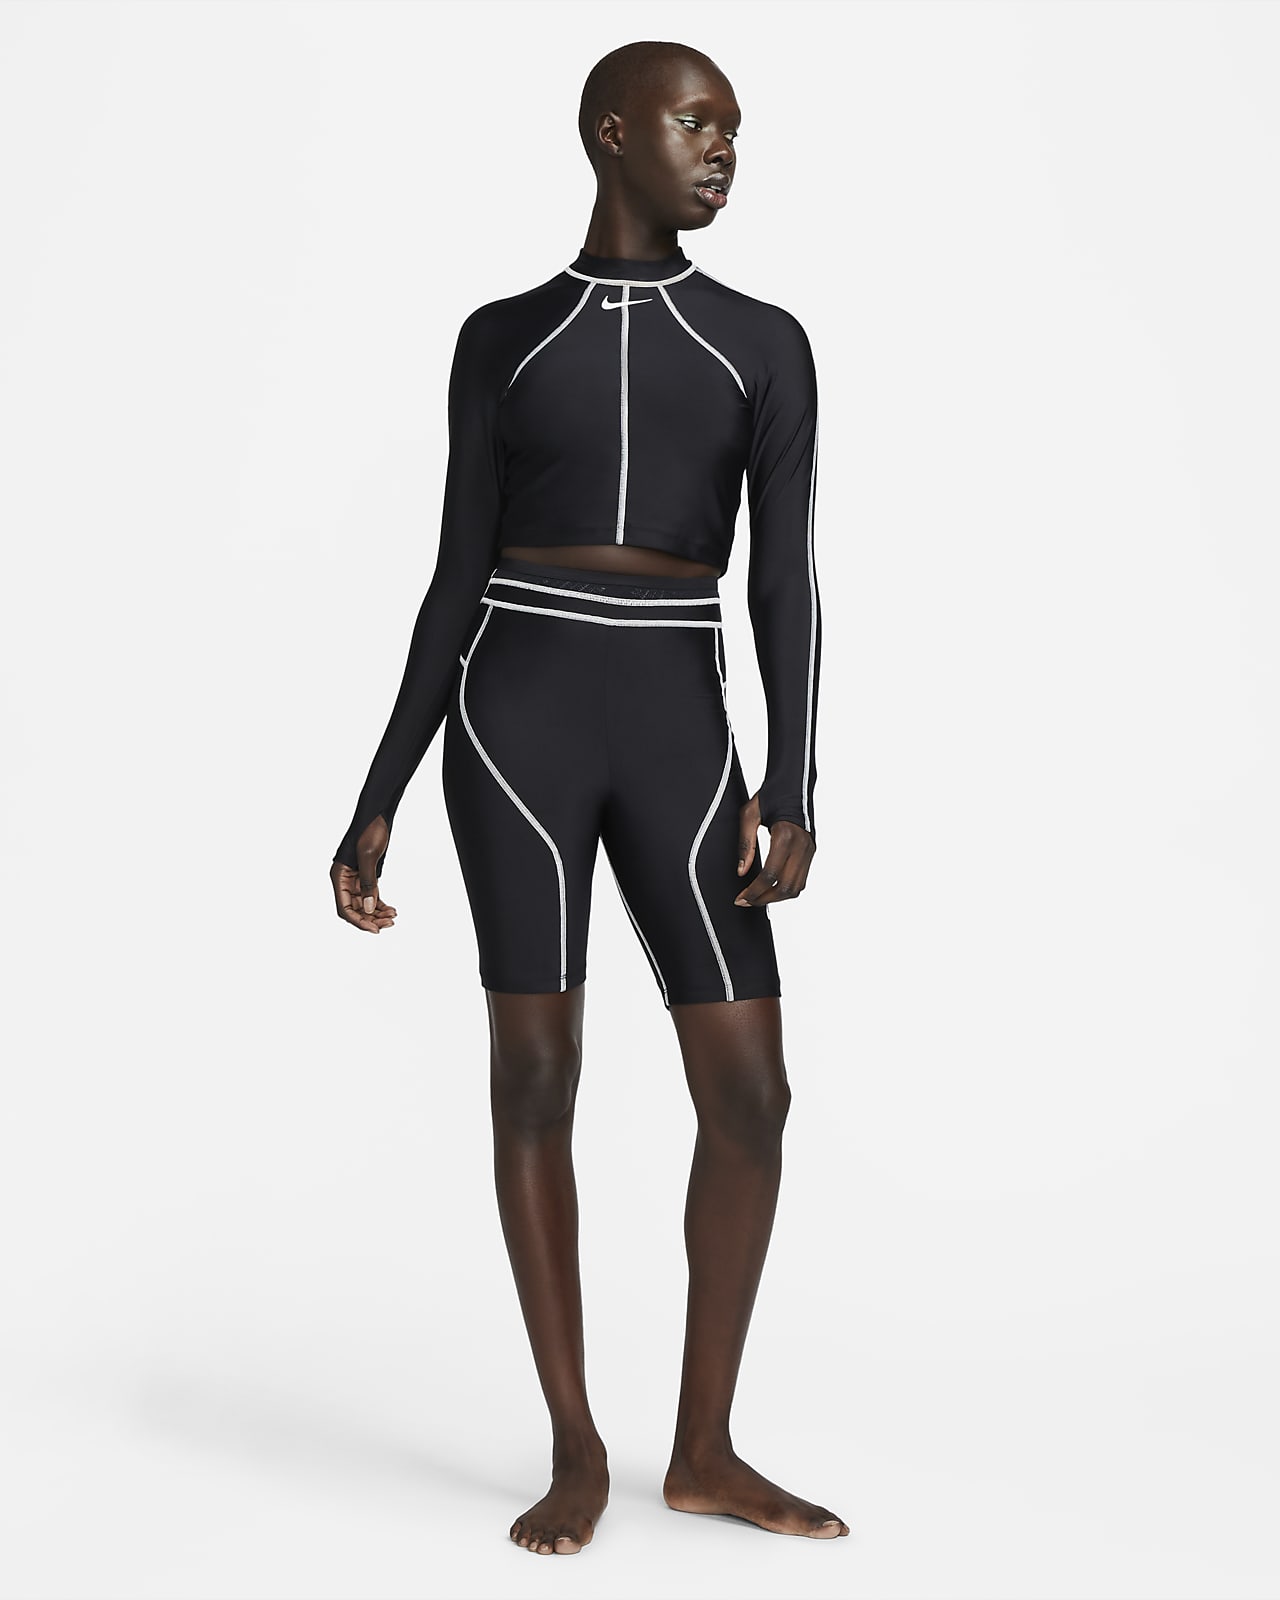 SALE - Swim Leggings Full Length - Black on black print 30% off